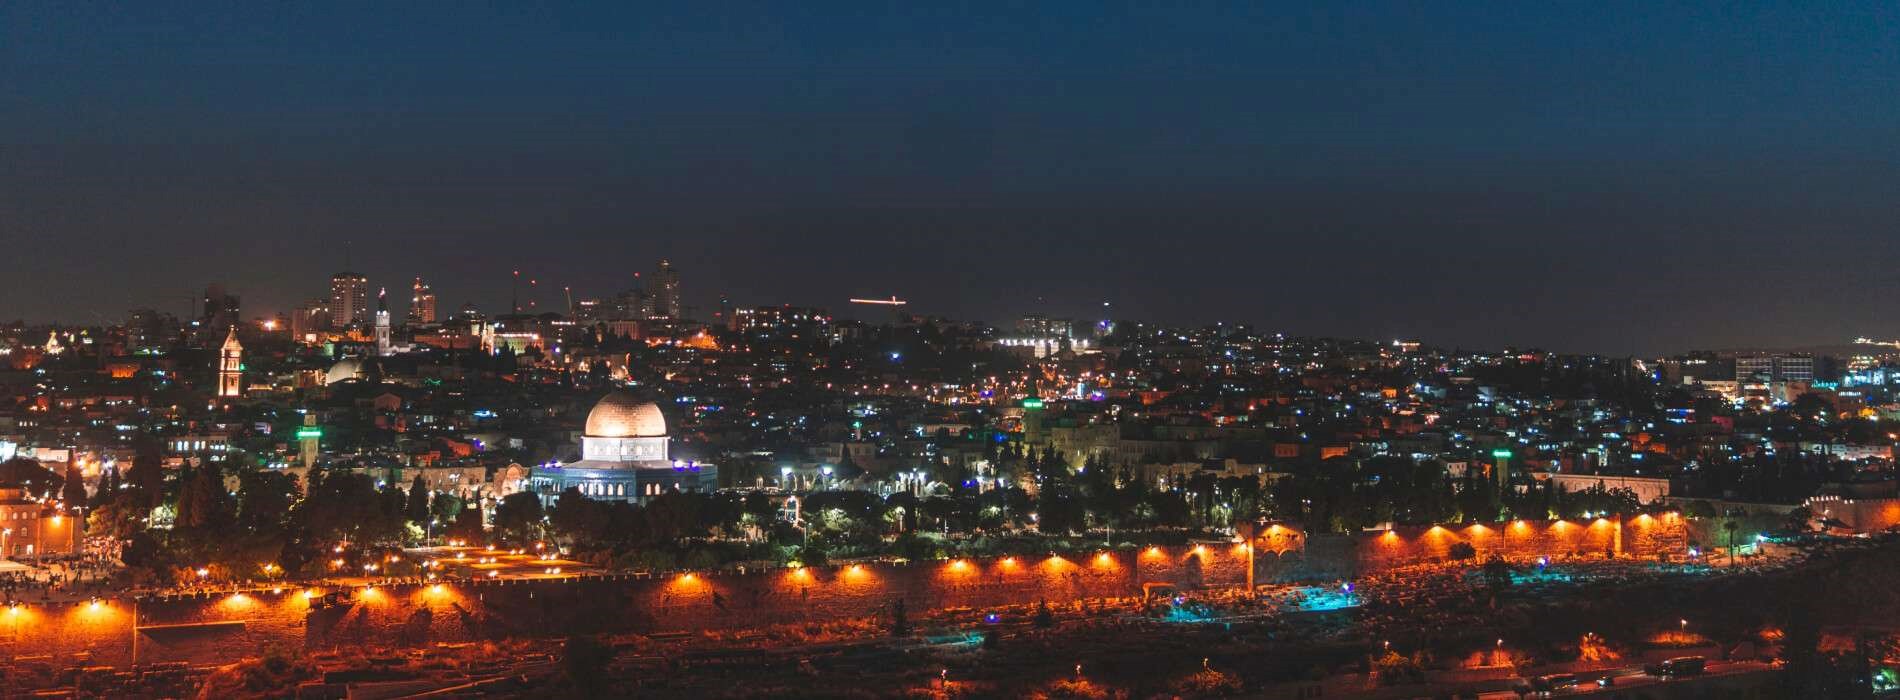 מלון שערי ירושלים - הצהרת נגישות 